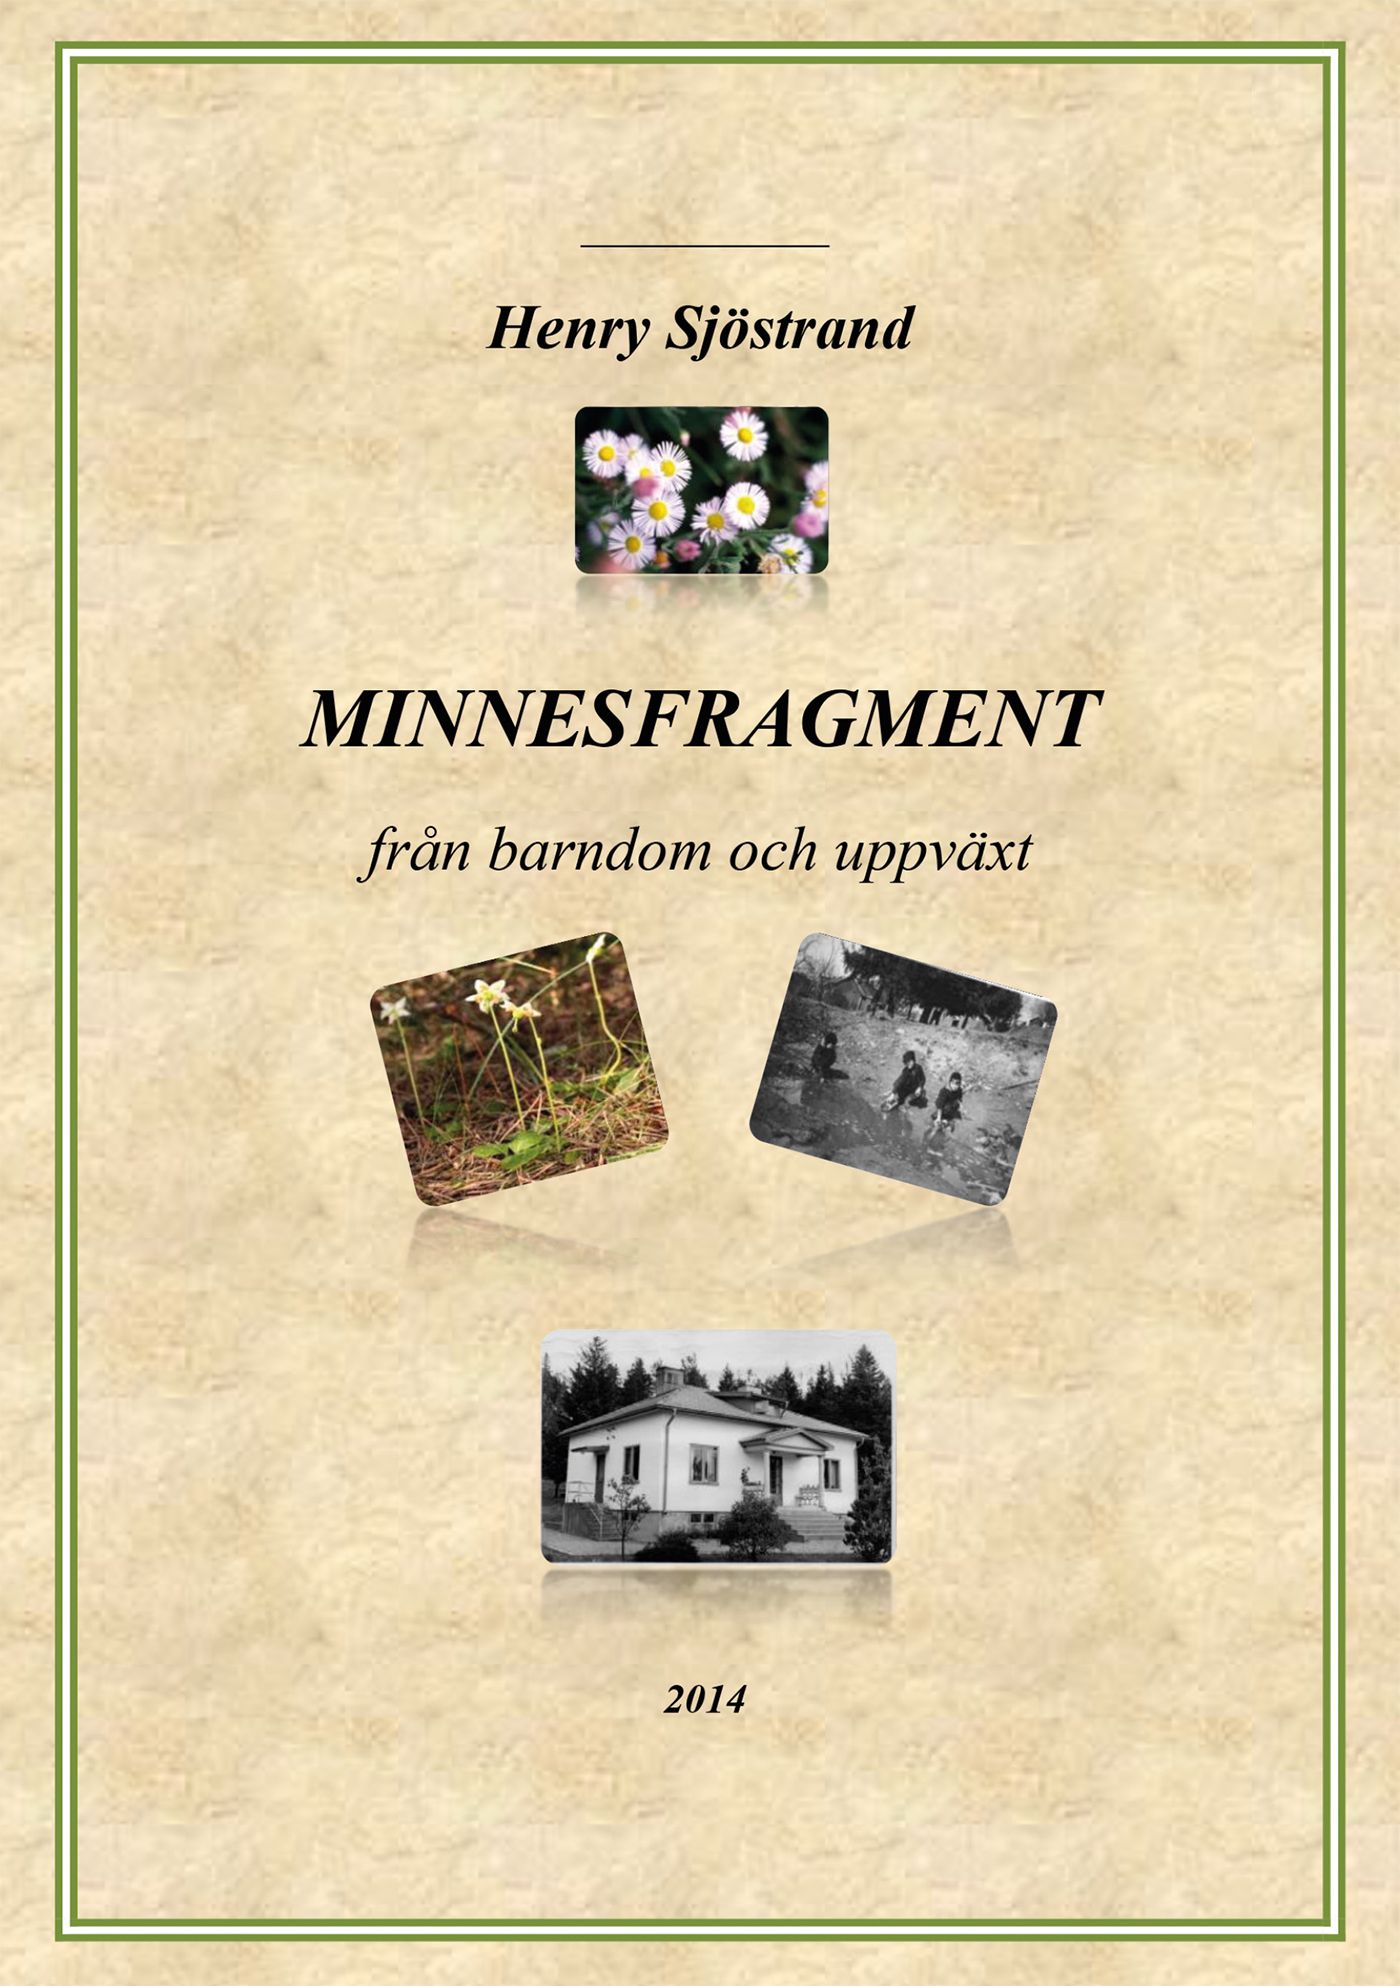 Minnesfragment, e-bok av Henry Sjöstrand